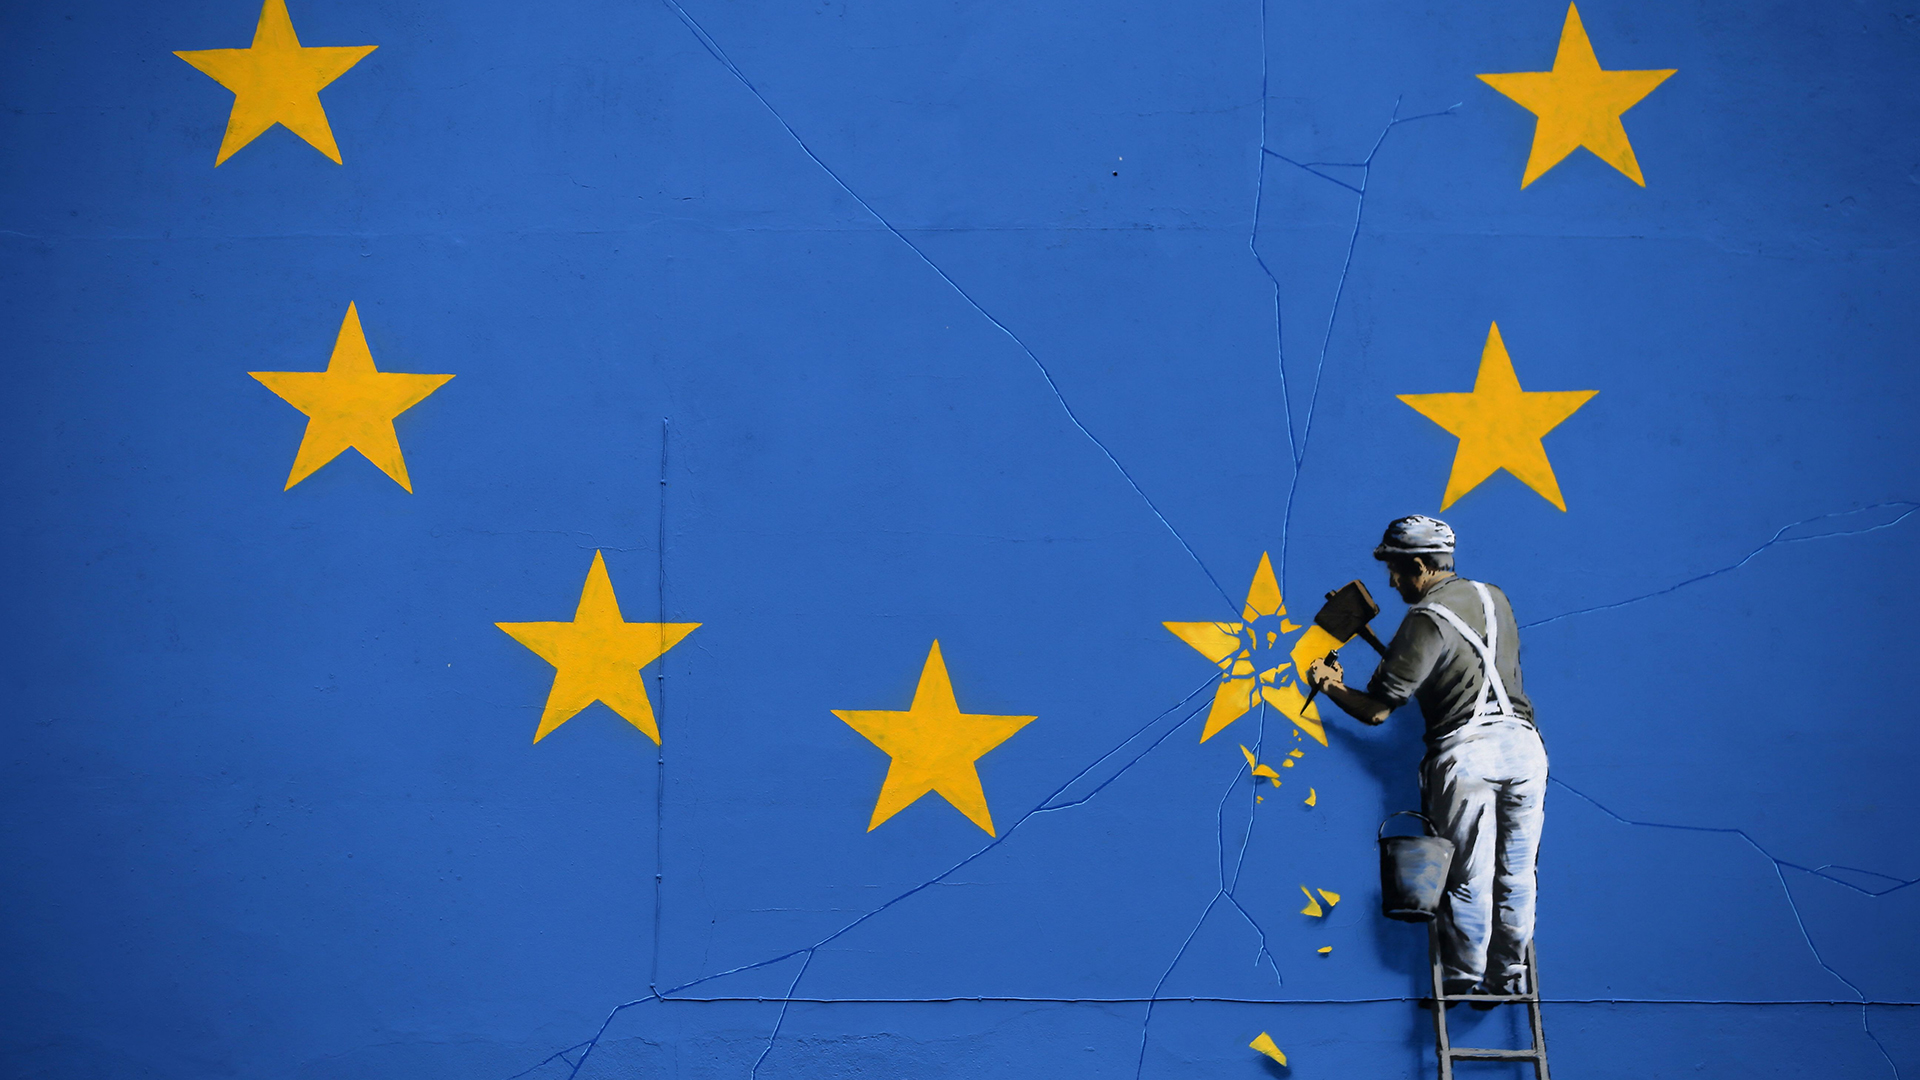 Streetart-Gemälde von Banksy zeigt einen Arbeiter, der mit einem Meißel einen Stern aus der EU-Flagge entfernt | AFP